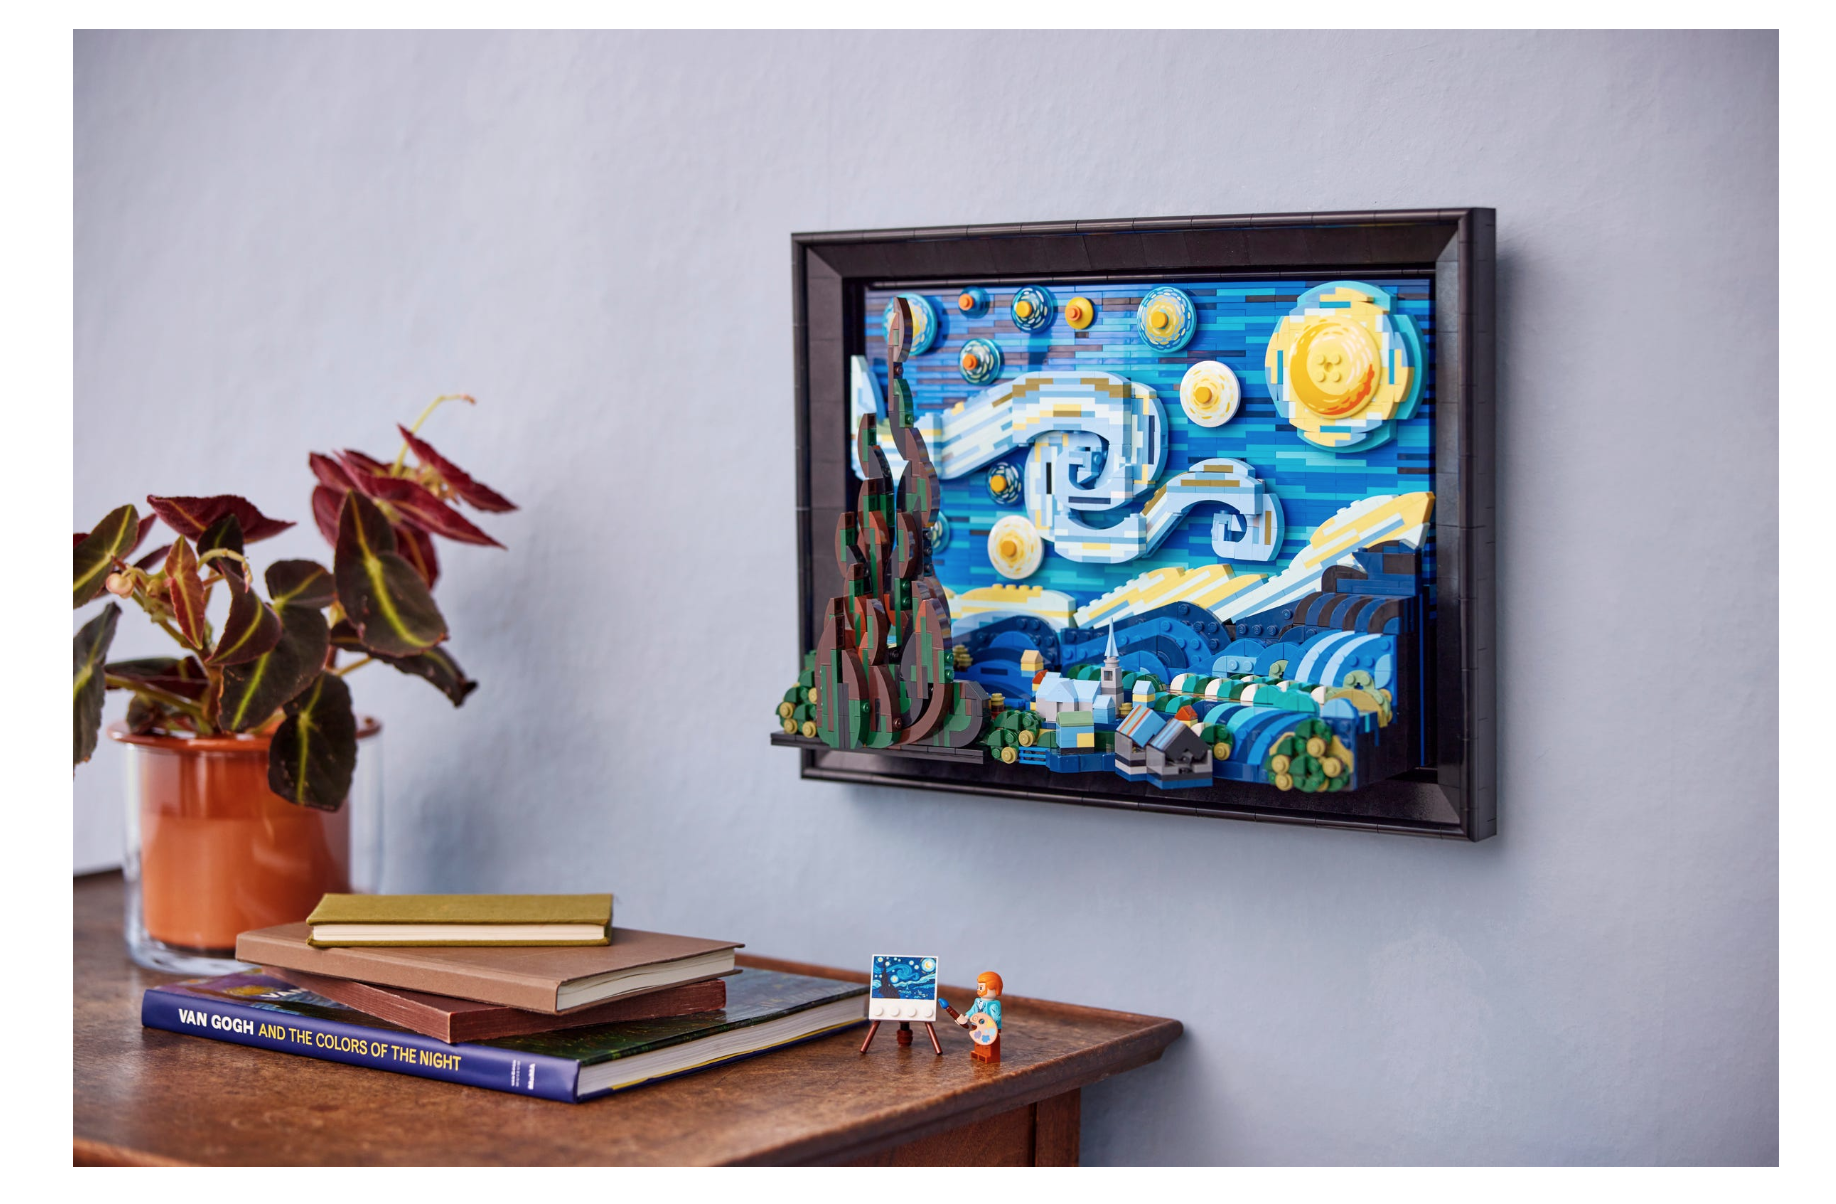 Objeto decorativo para el hogar: Esta pieza de arte con ladrillos LEGO® que recrea la obra de Van Gogh mide aproximadamente 28 cm de altura, 38 cm de anchura y 12 cm de profundidad; puede exponerse de pie o colgada con el gancho de pared